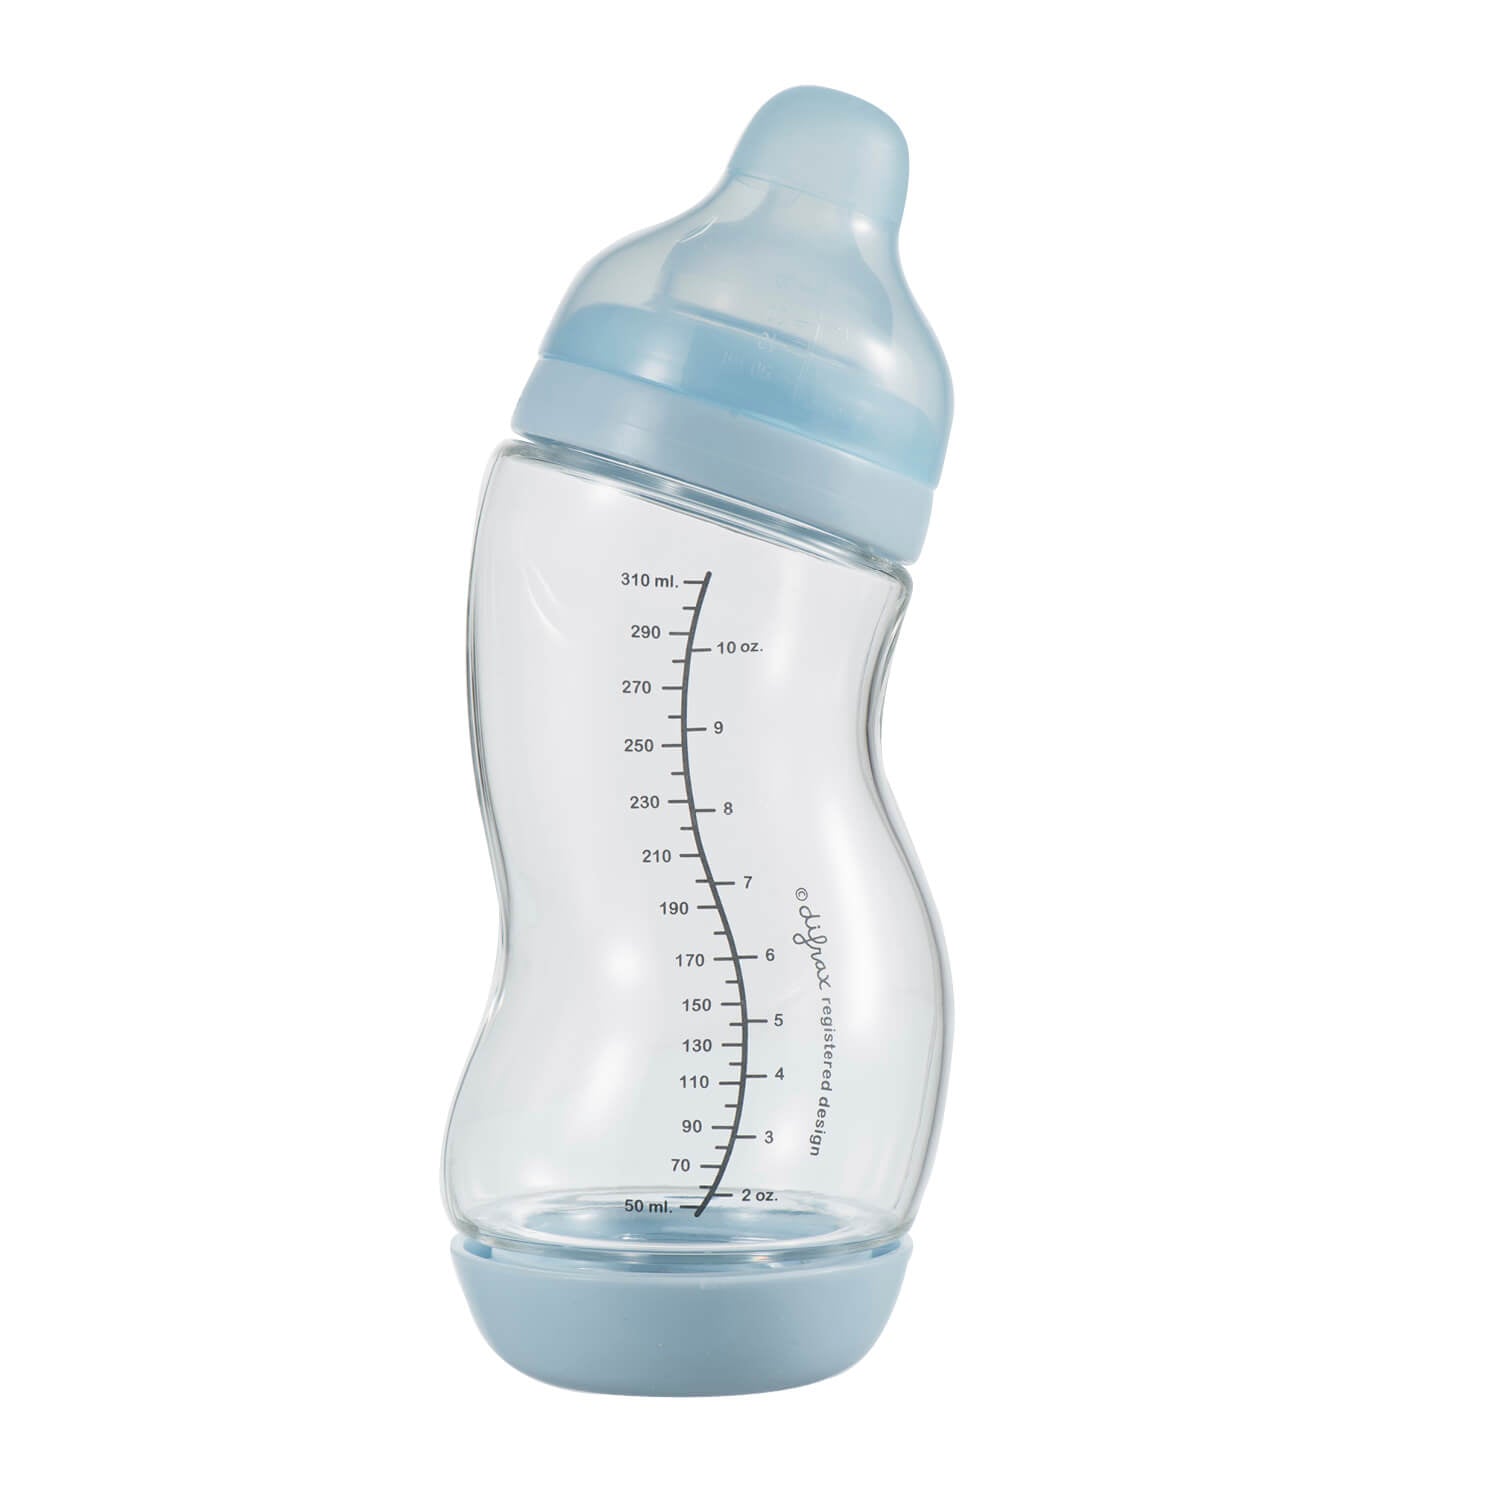 Glass S-bottle - 310 ml - Wide